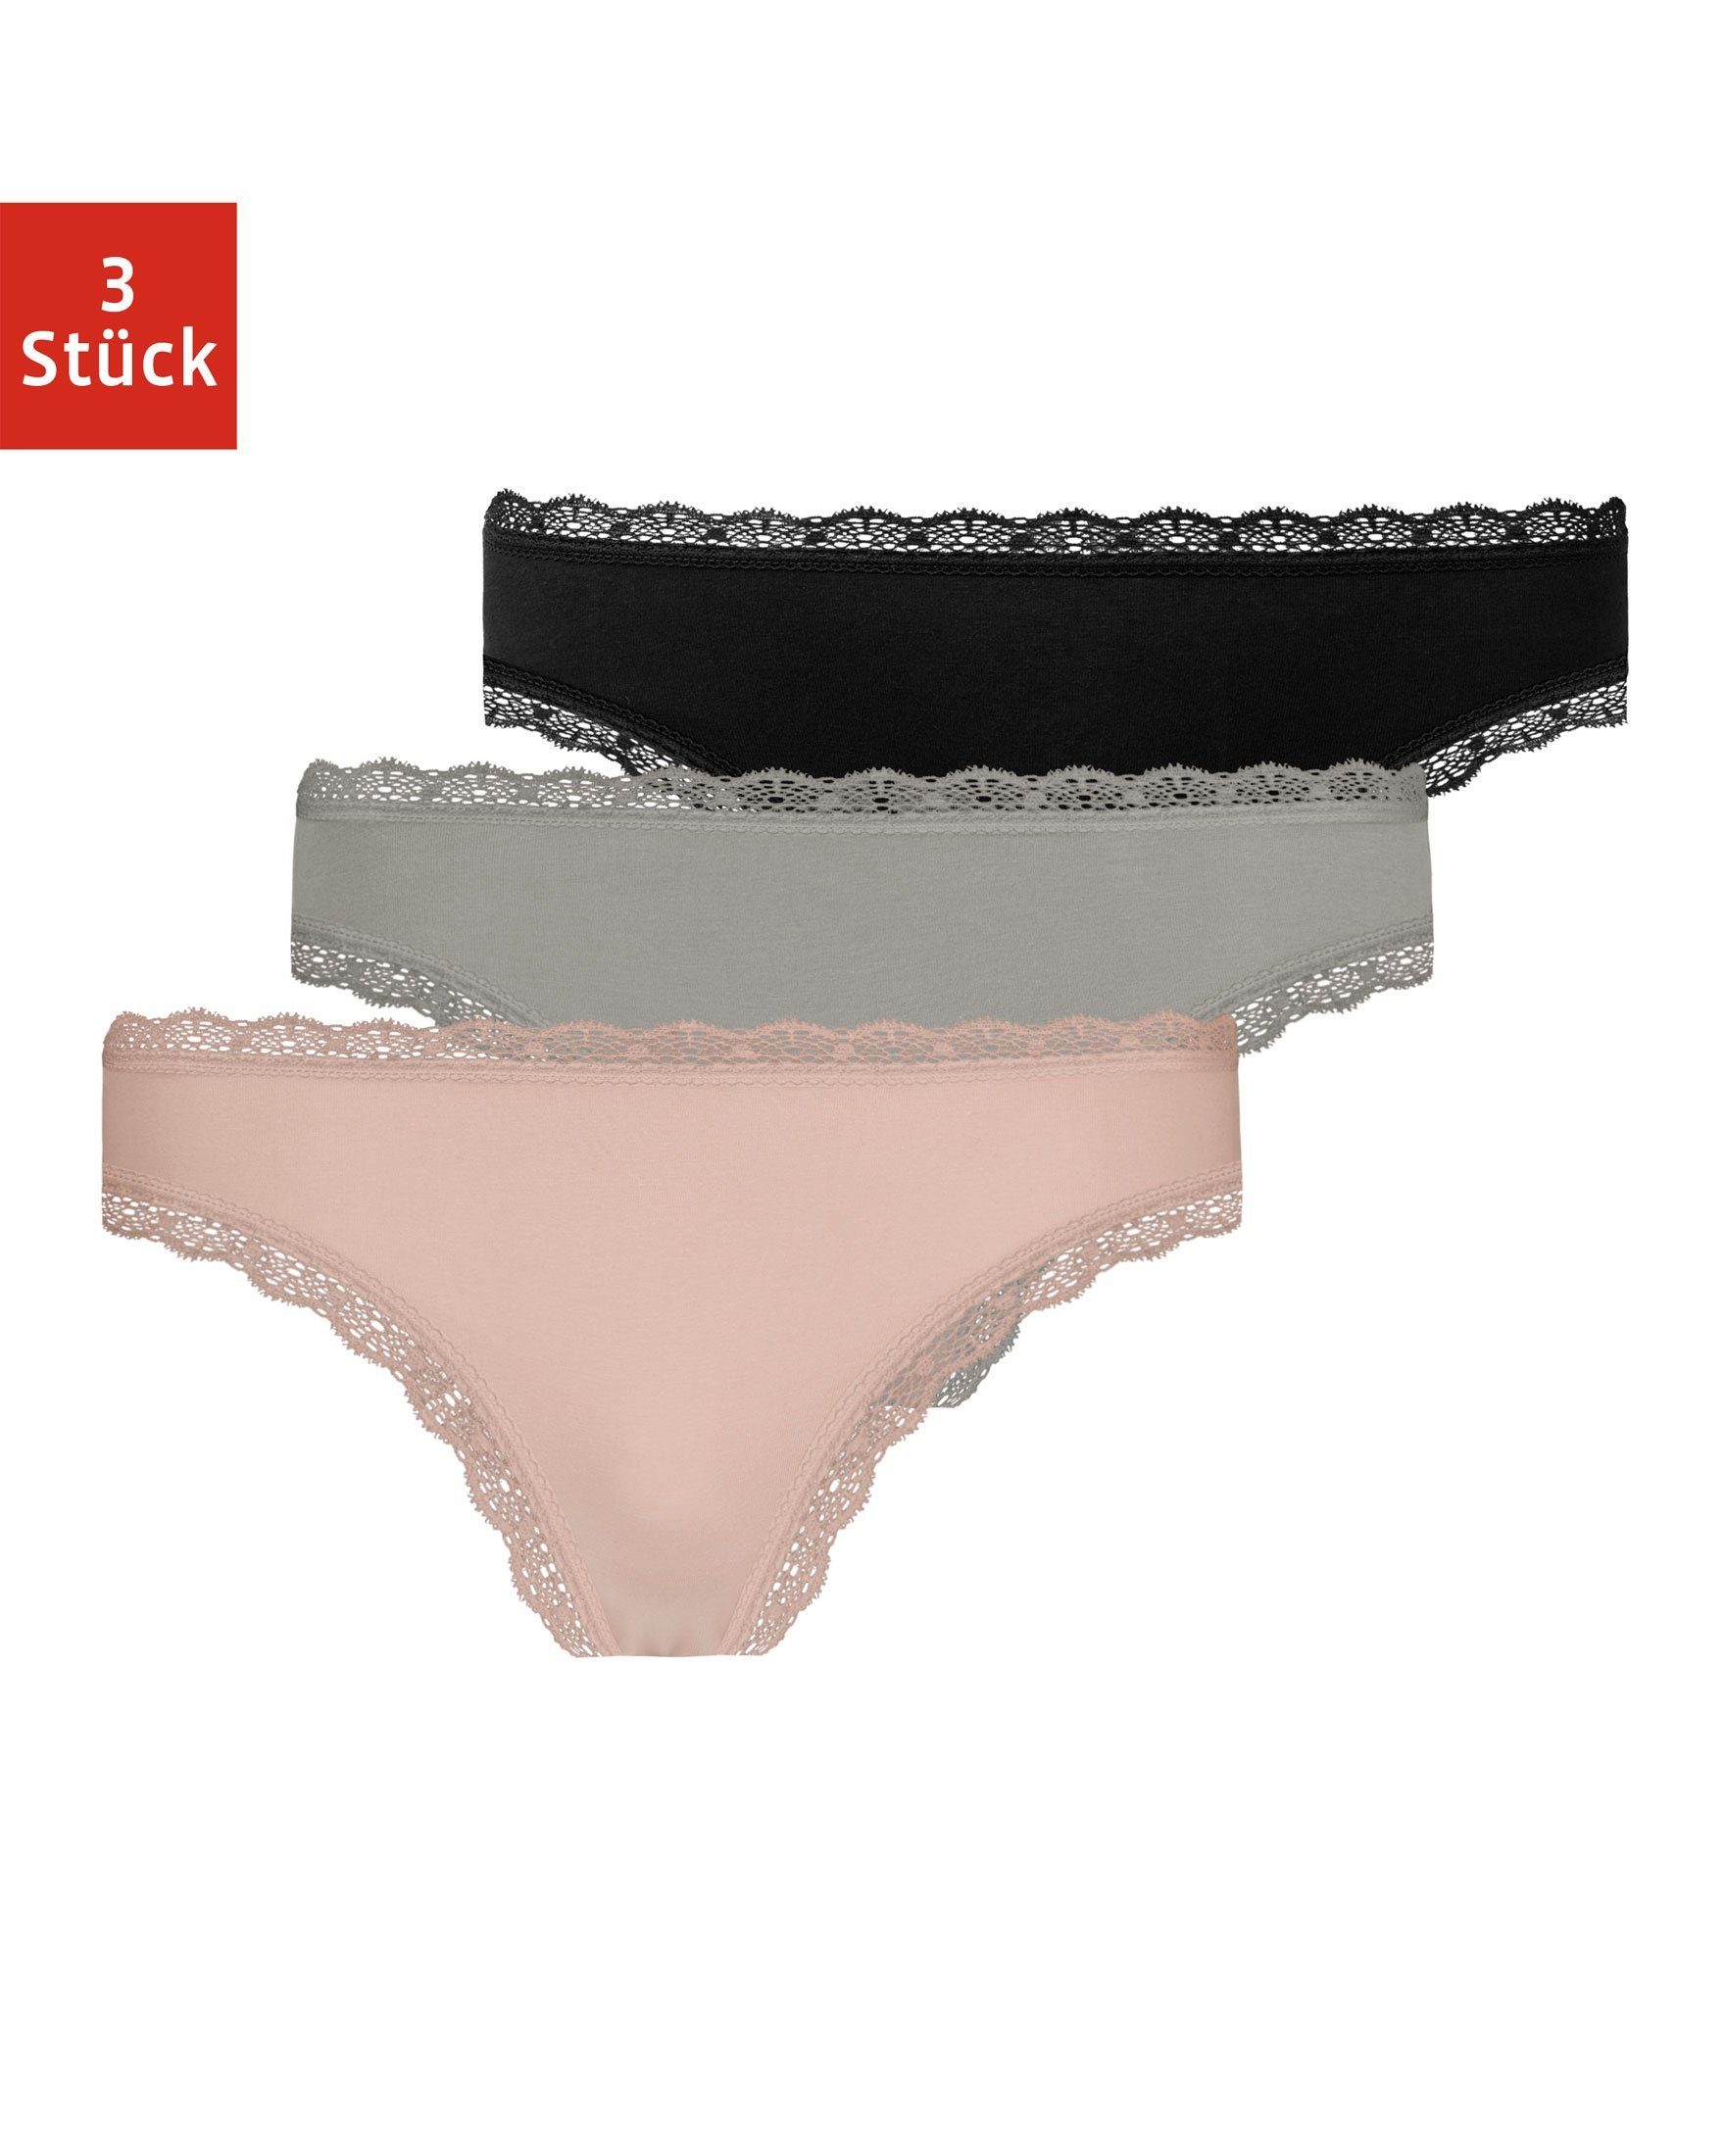 SNOCKS Tanga »Unterwäsche Damen String Unterhosen« (3 Stück) aus Bio- Baumwolle mit Spitze, unsichtbar unter deiner Kleidung online kaufen | OTTO